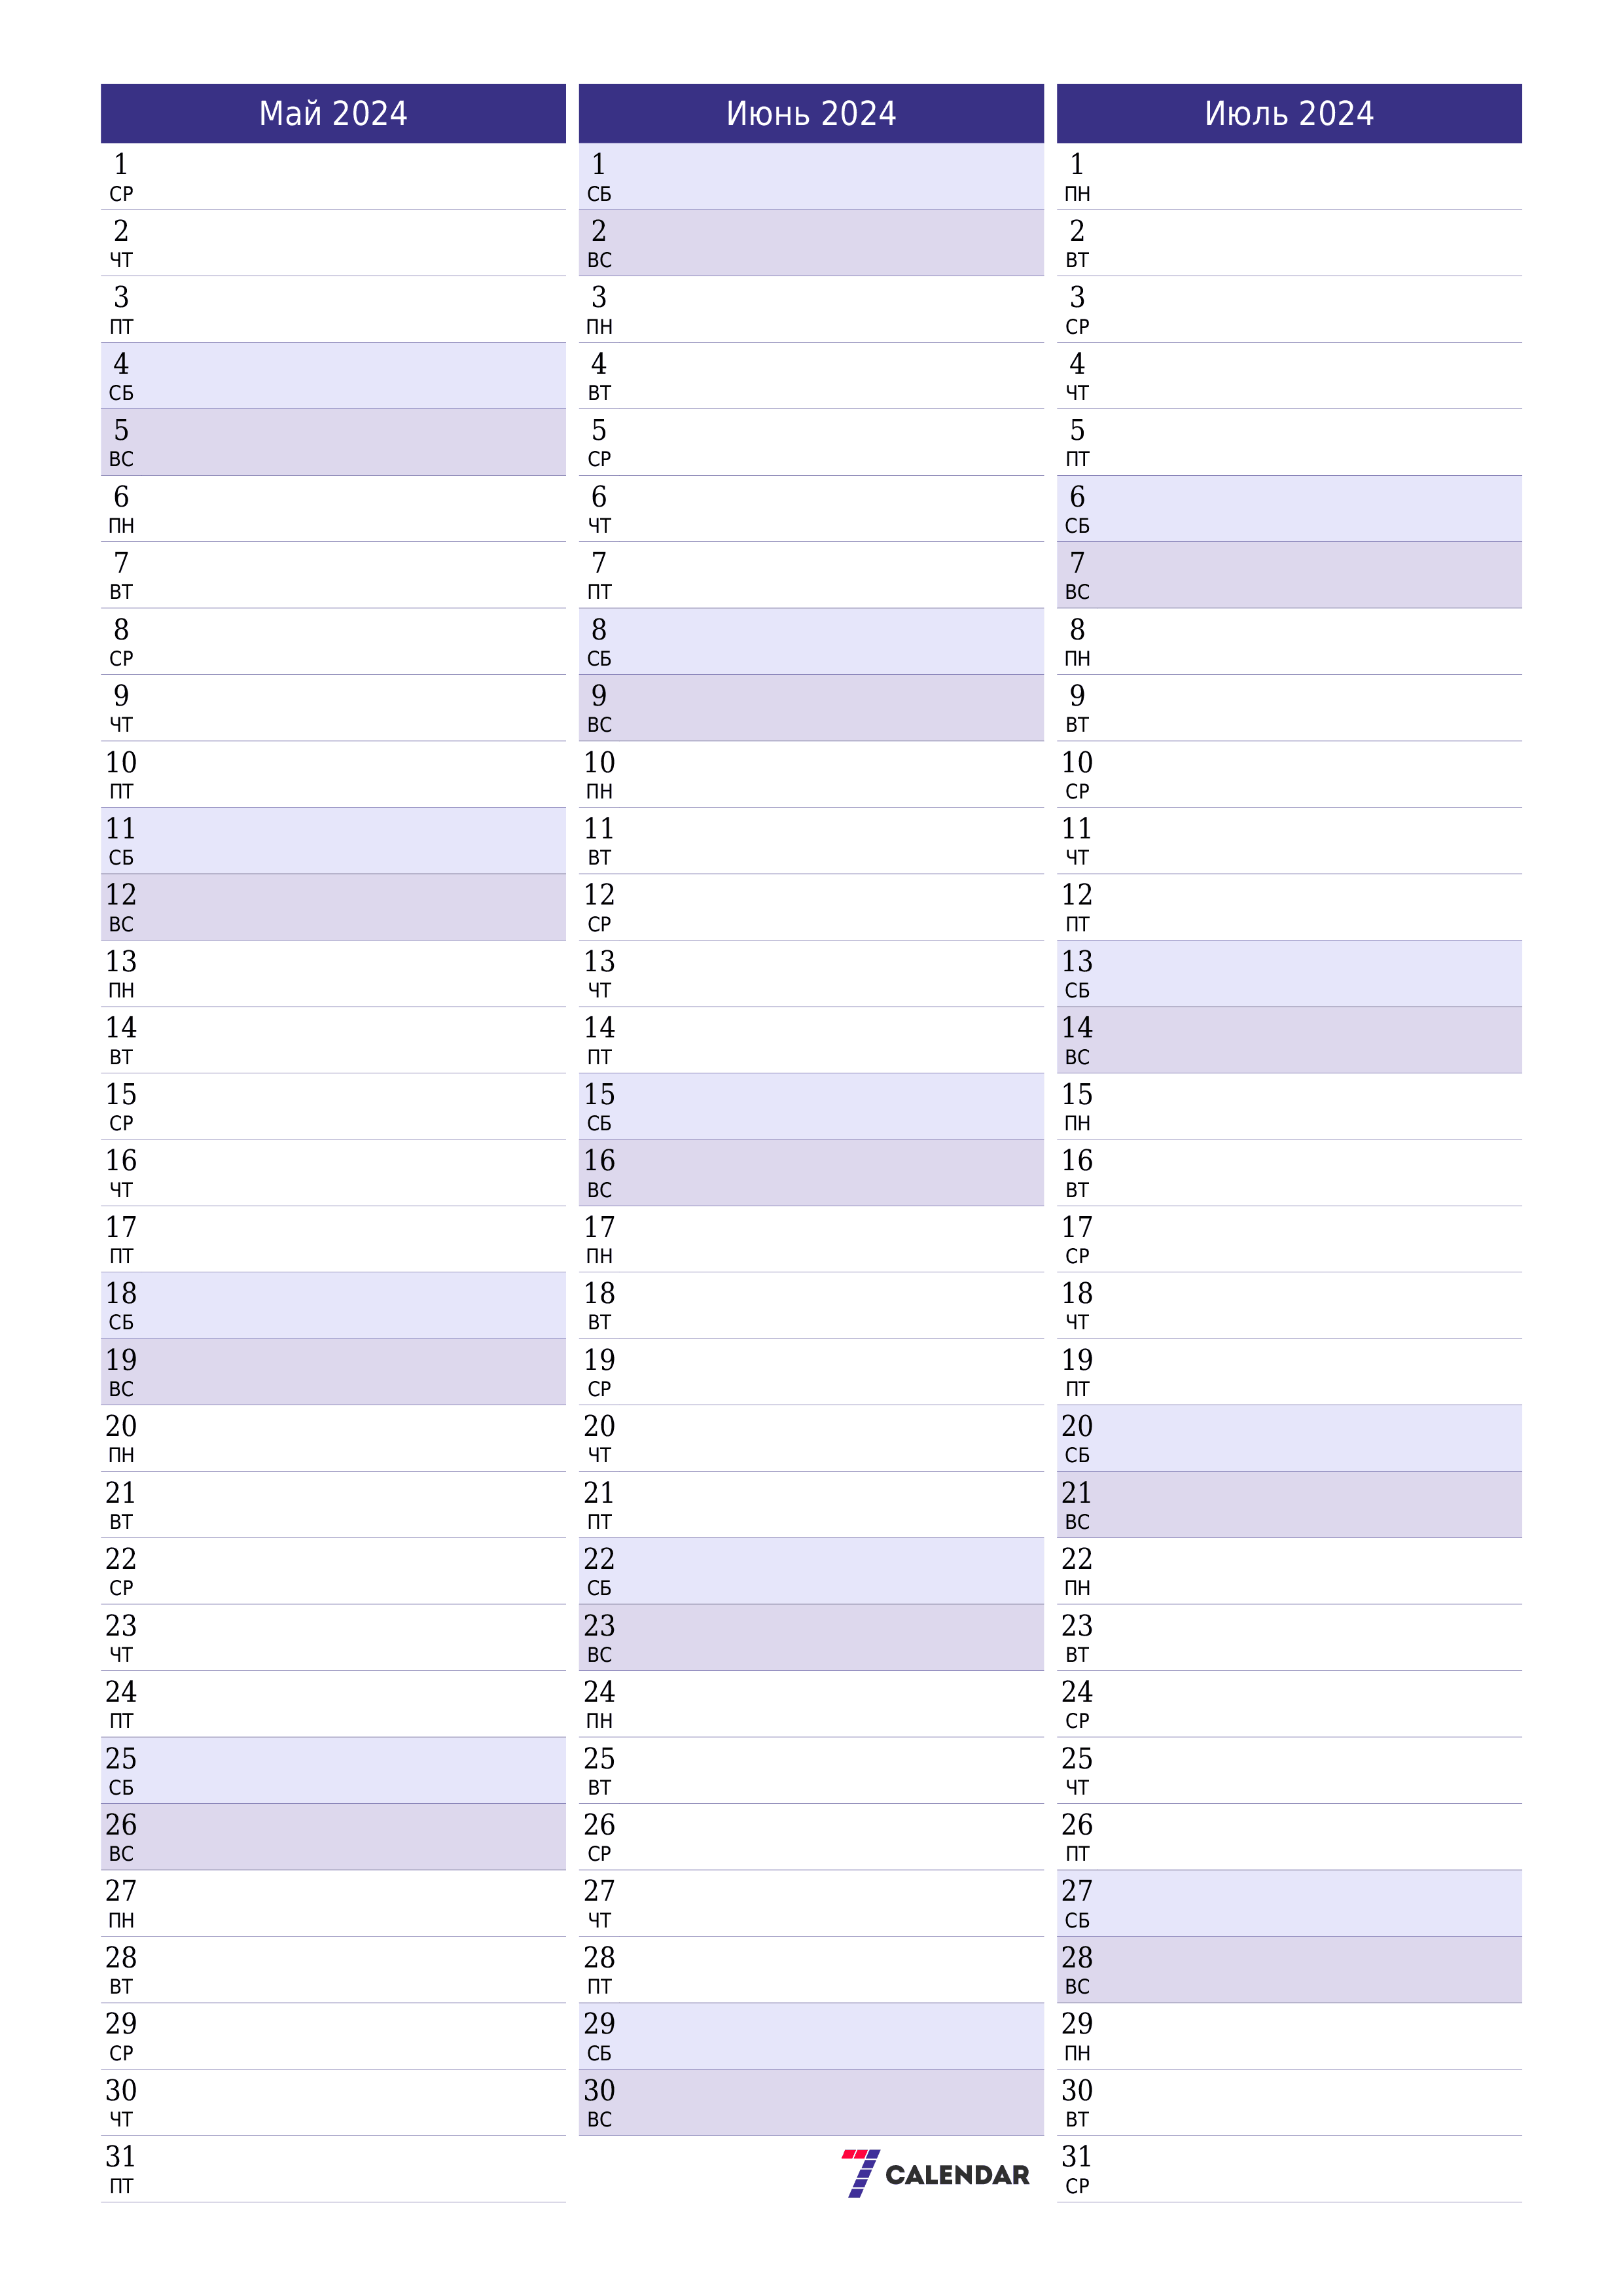 Пустой ежемесячный календарь-планер на месяц Май 2024